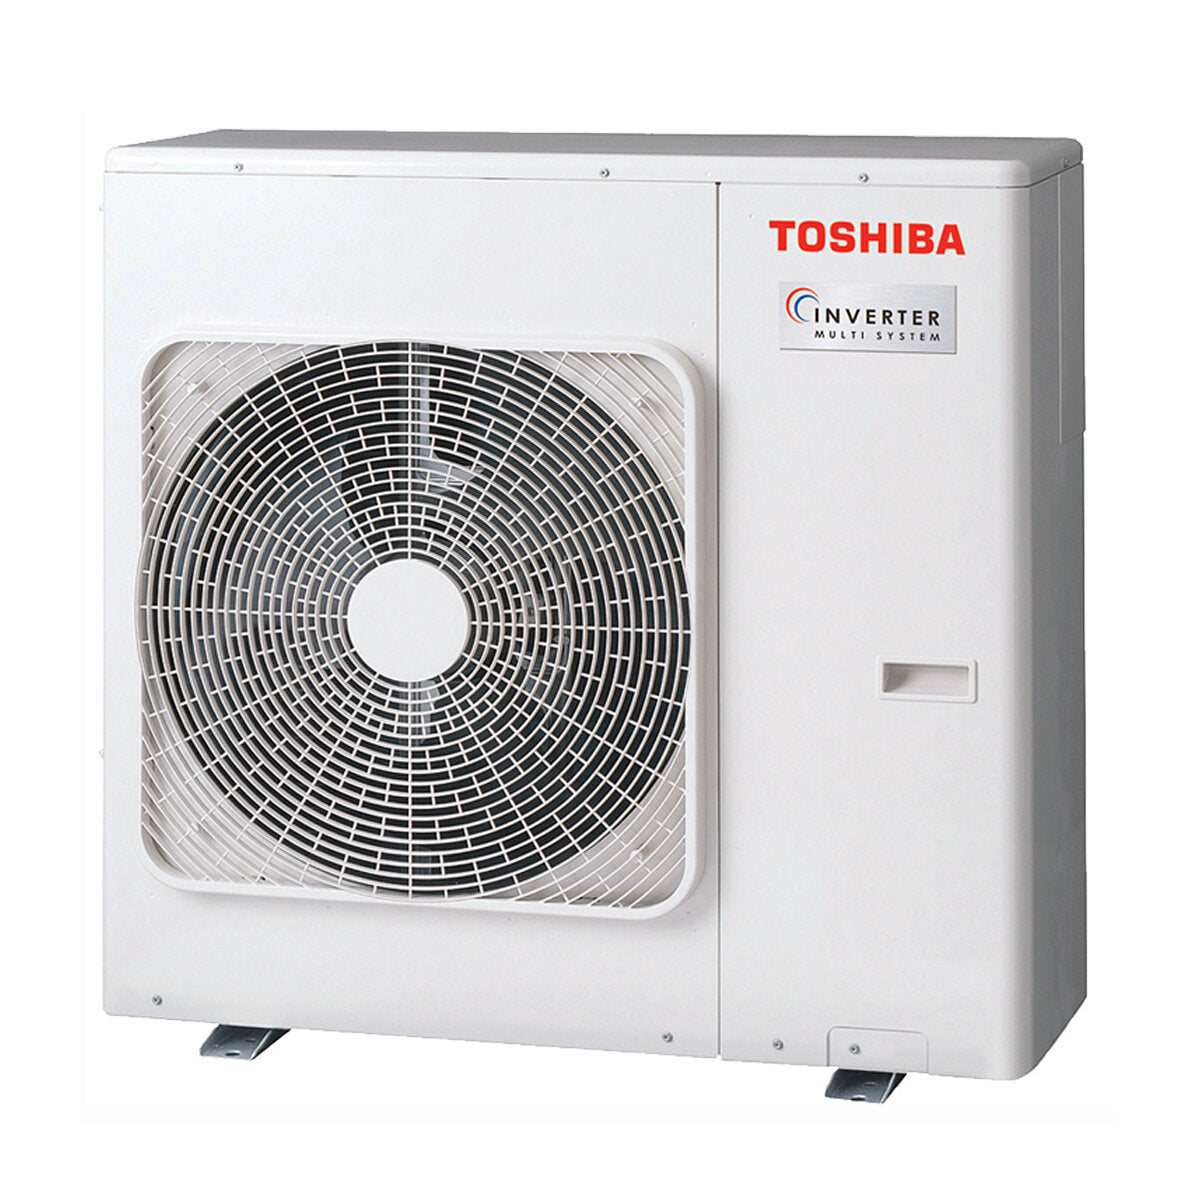 Toshiba Ductable Air Conditioner U2 Penta Split 7000 + 9000 + 9000 + 9000 + 16000 BTU Inverter A++ Außengerät 10,0 kW